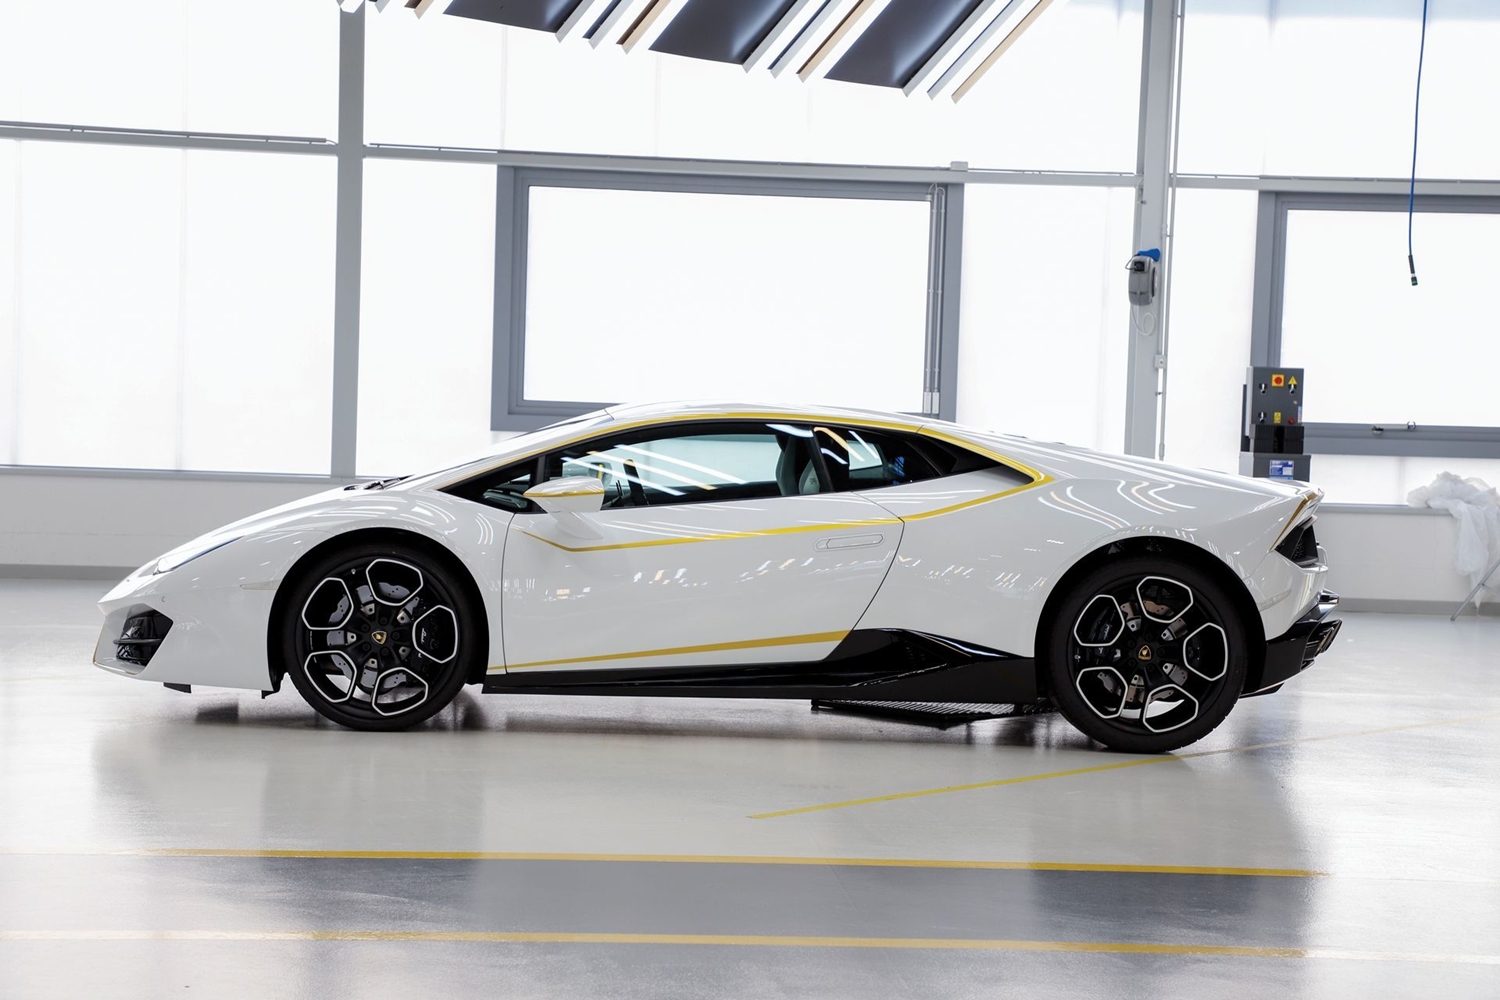 Már nem sokáig marad a pápáé ez a gyönyörű Lamborghini 6